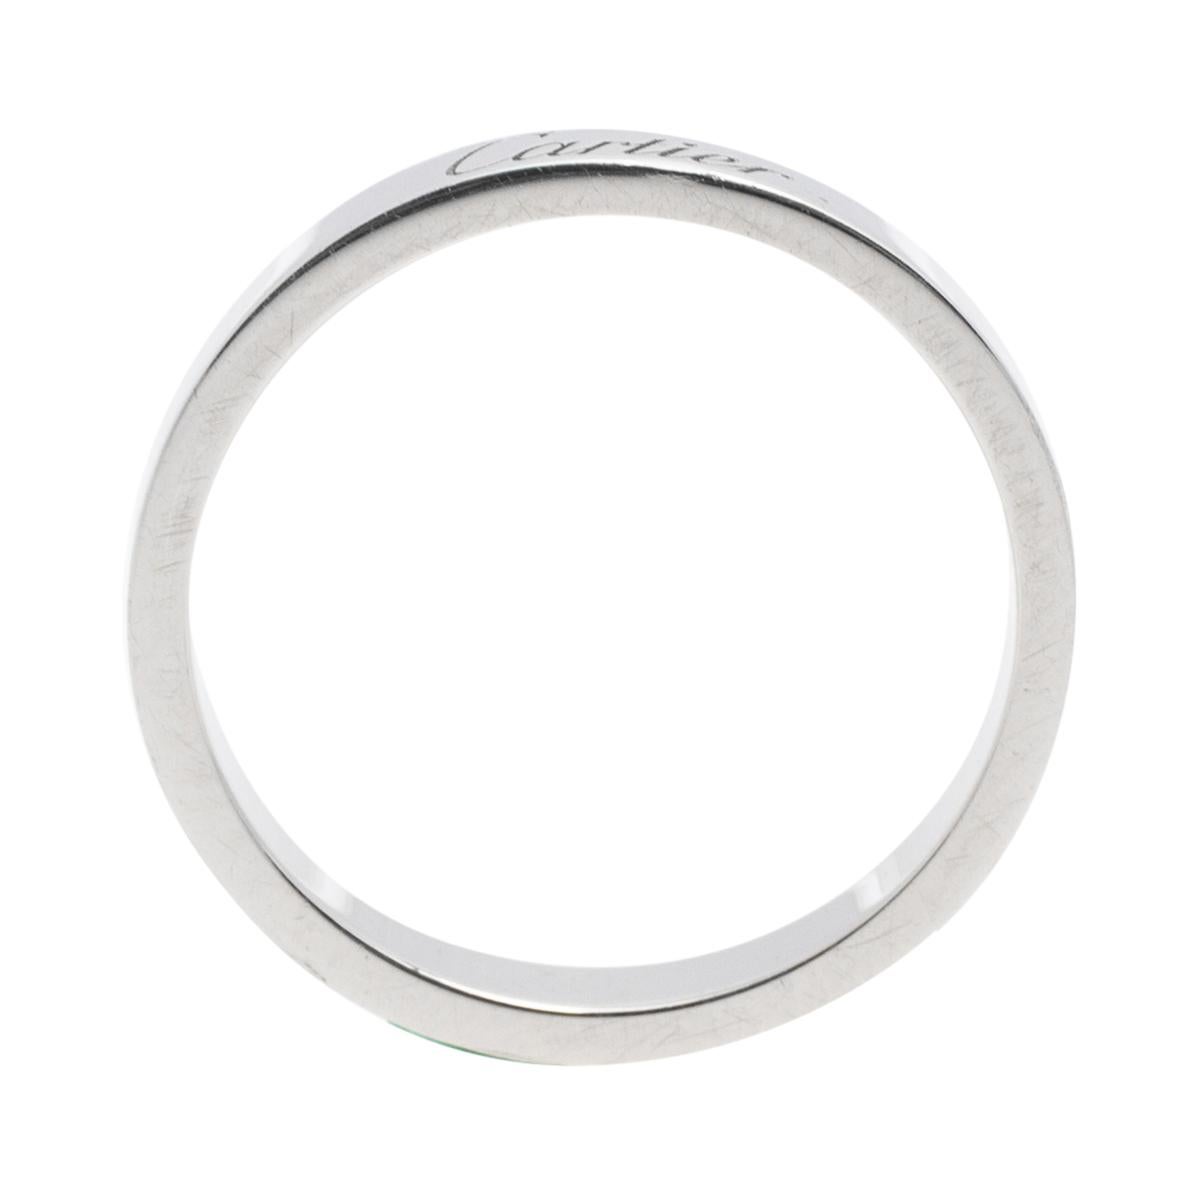 Contemporary Cartier C De Cartier Platinum Wedding Band Ring